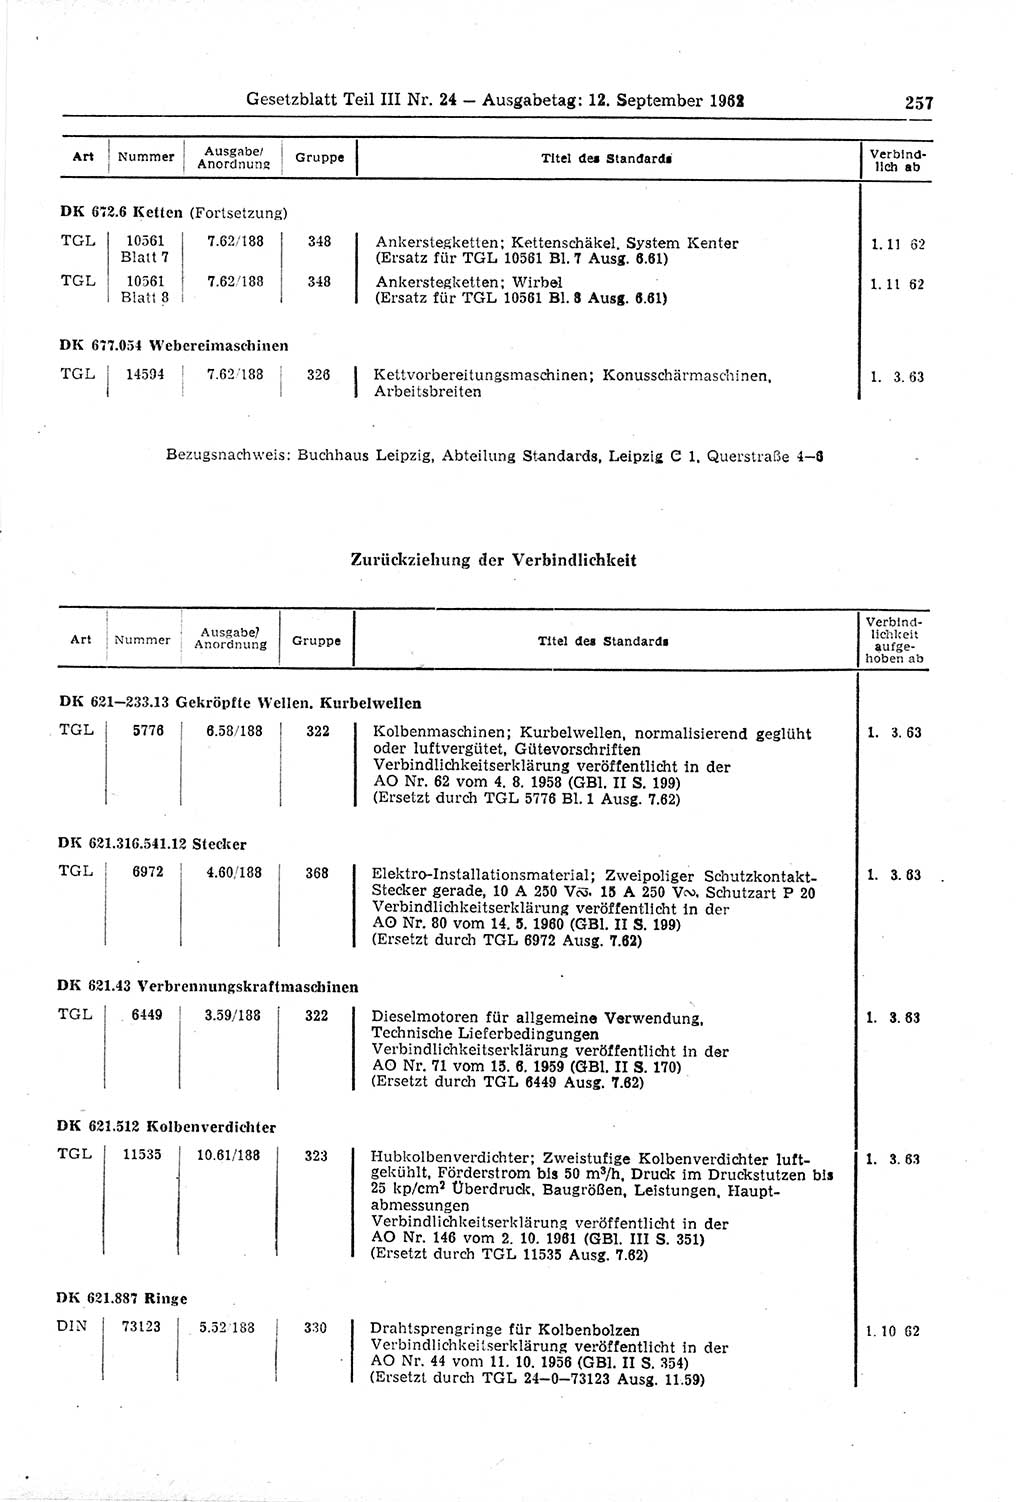 Gesetzblatt (GBl.) der Deutschen Demokratischen Republik (DDR) Teil ⅠⅠⅠ 1962, Seite 257 (GBl. DDR ⅠⅠⅠ 1962, S. 257)